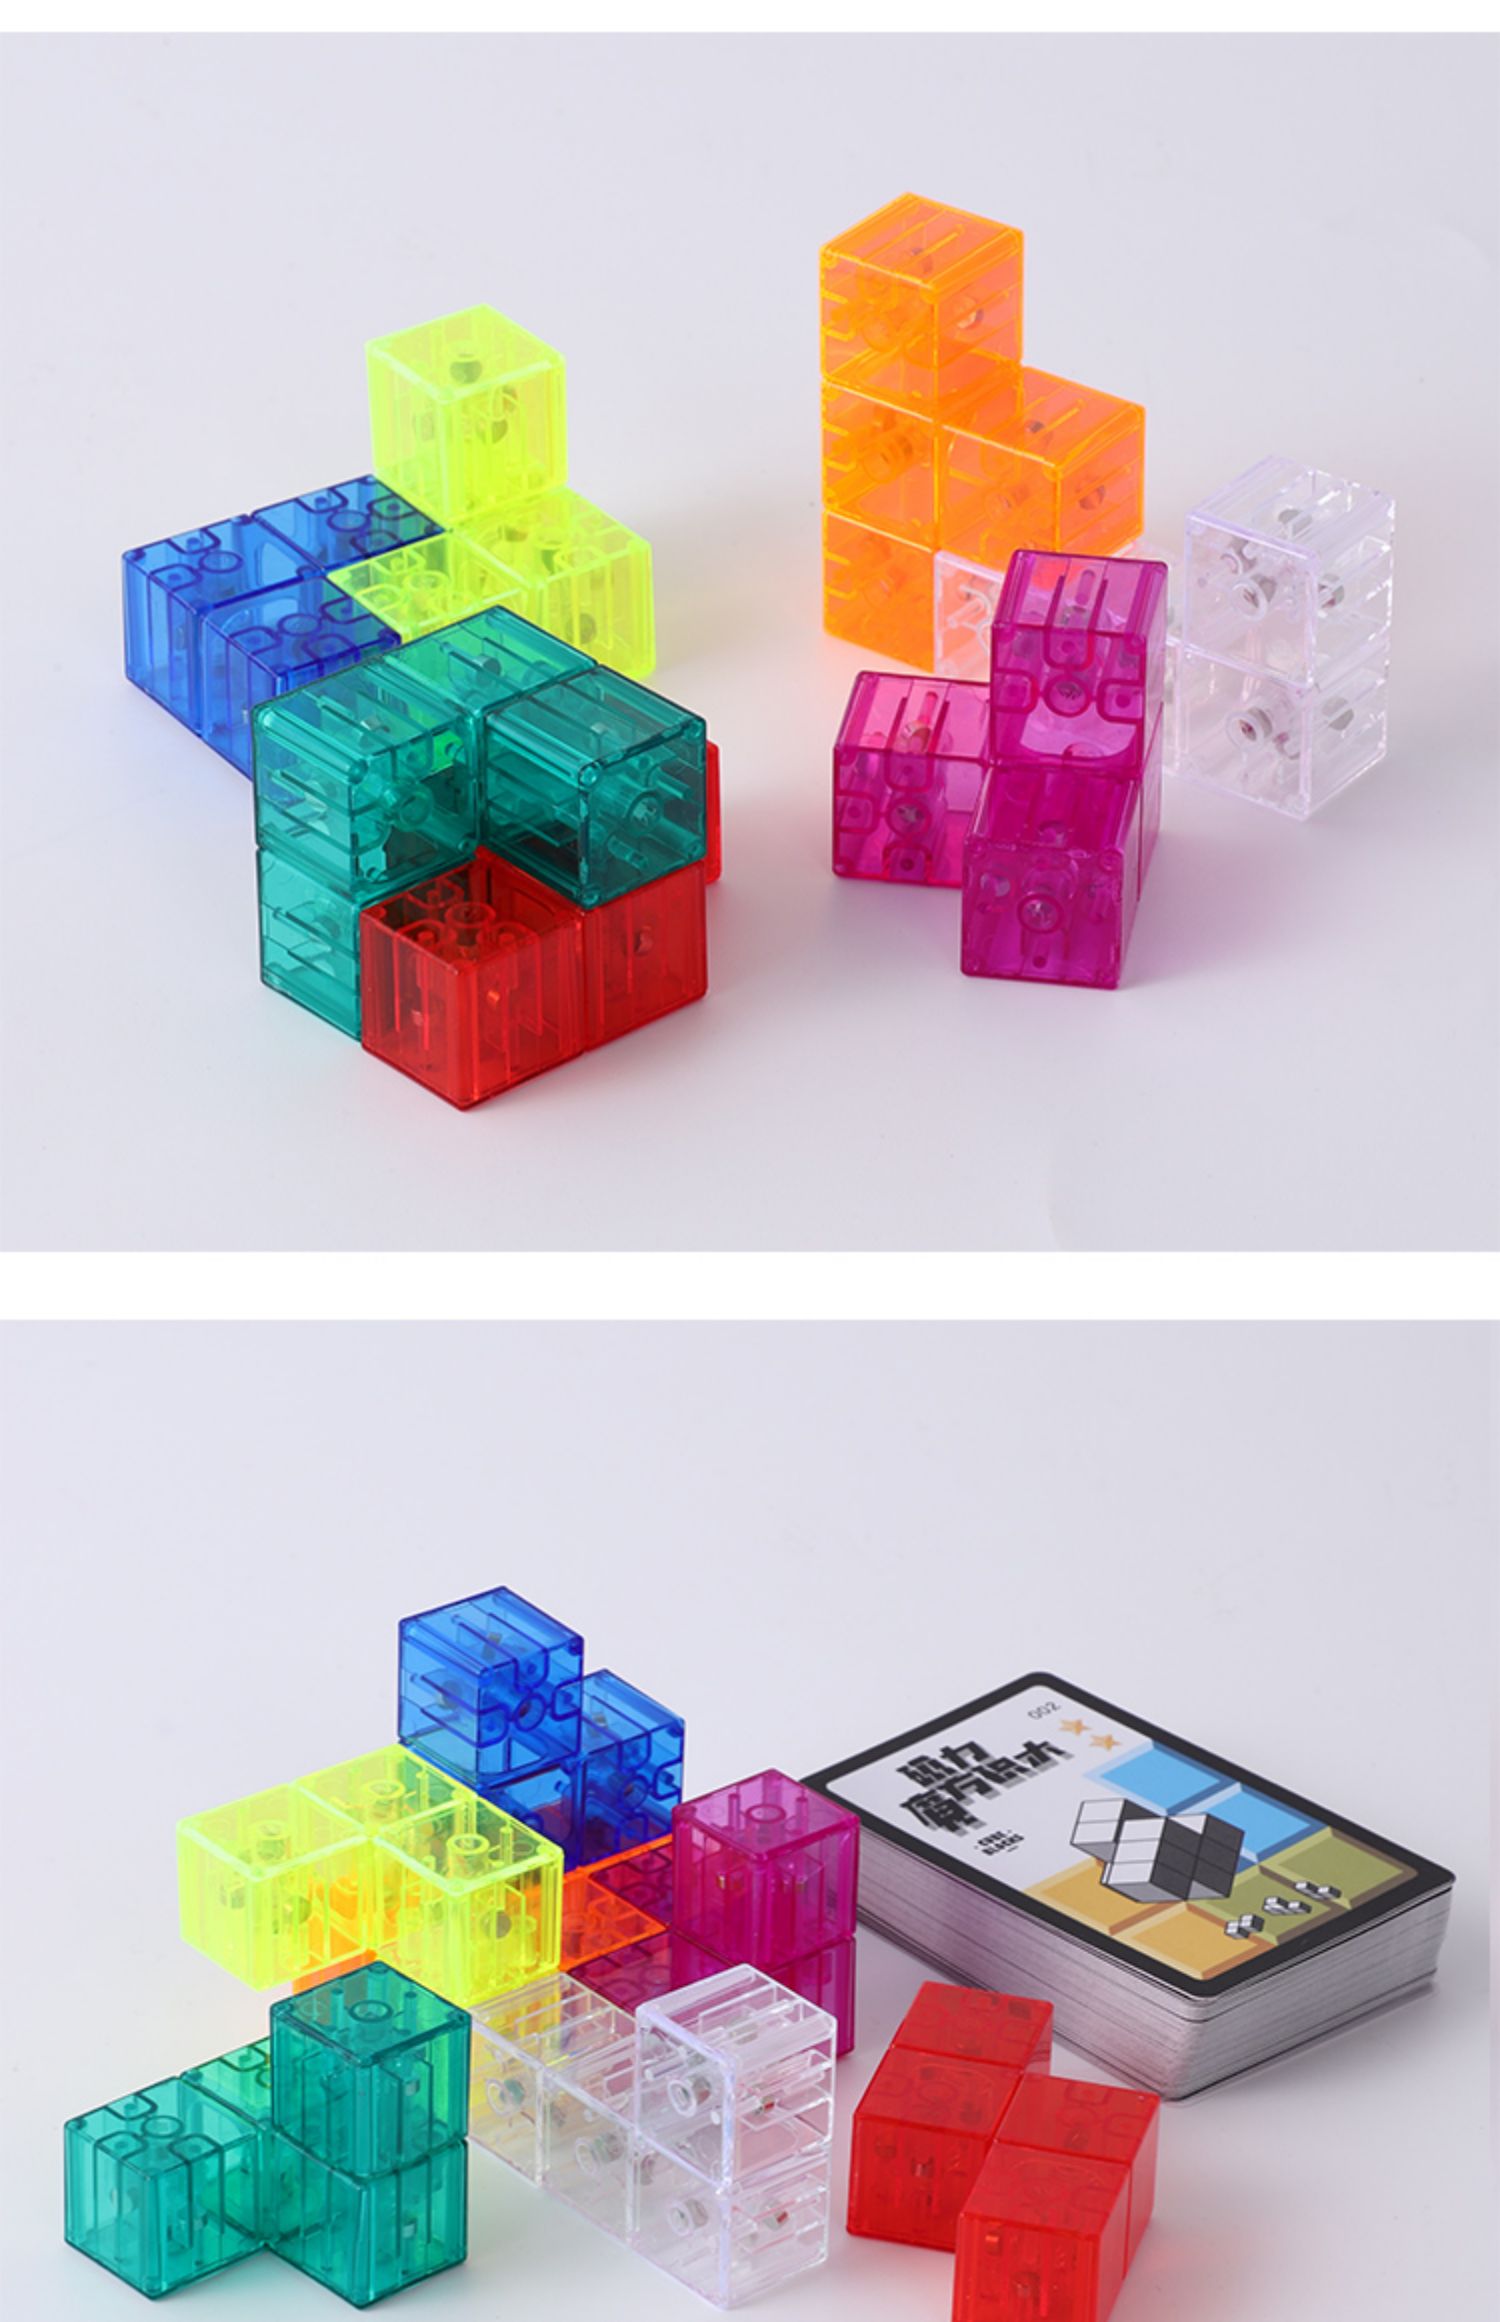 磁力魔方积木鲁班索玛立方体方块儿童拼装思维空间益智训练玩具真智力